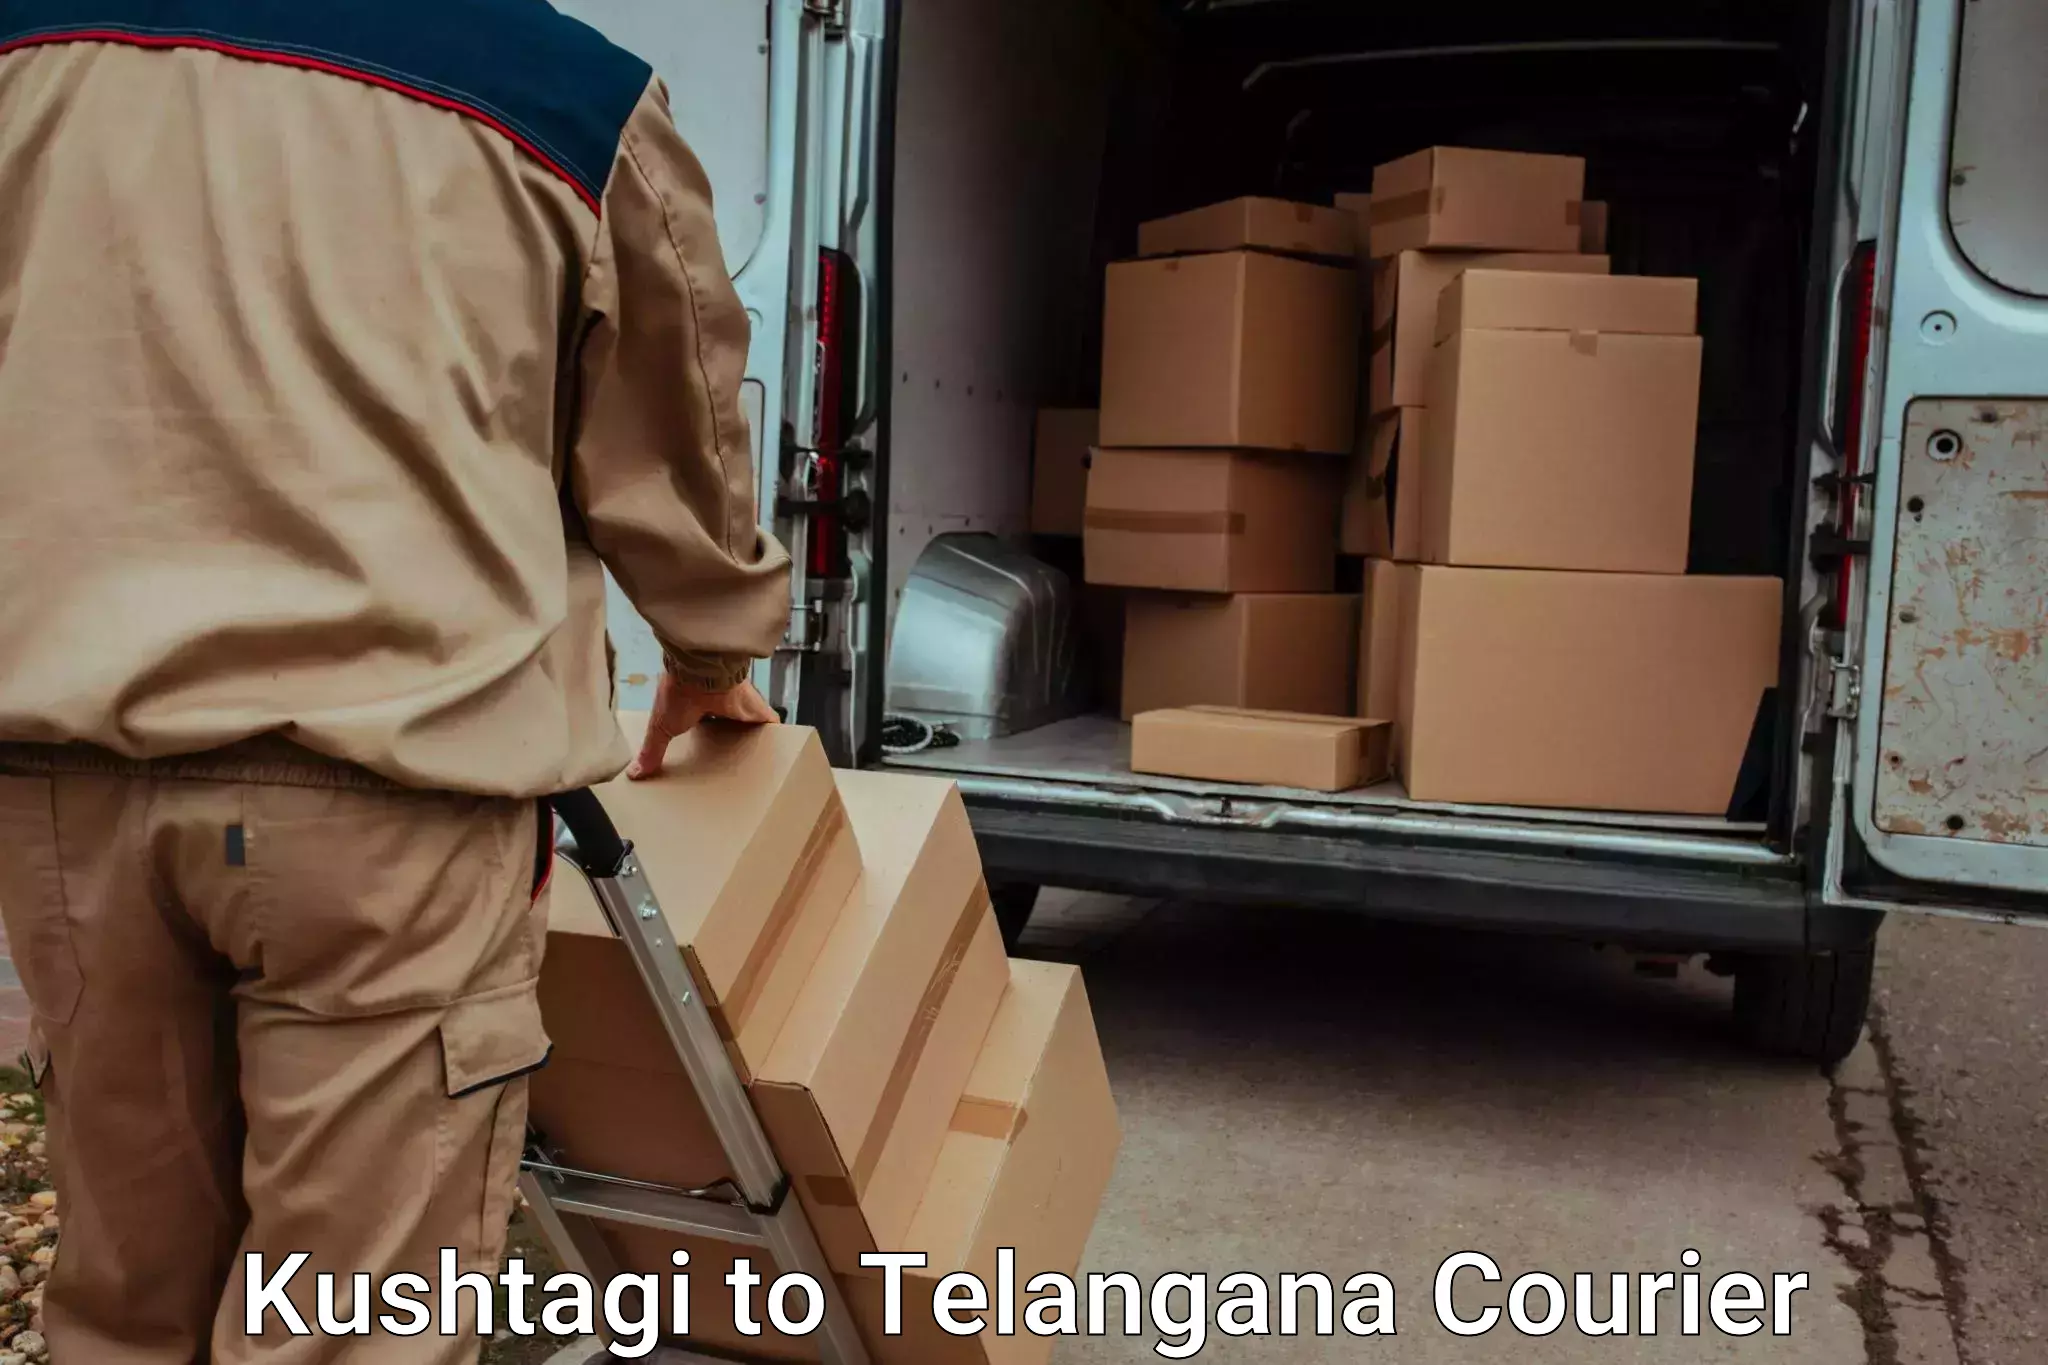 Luggage transport operations in Kushtagi to Husnabad